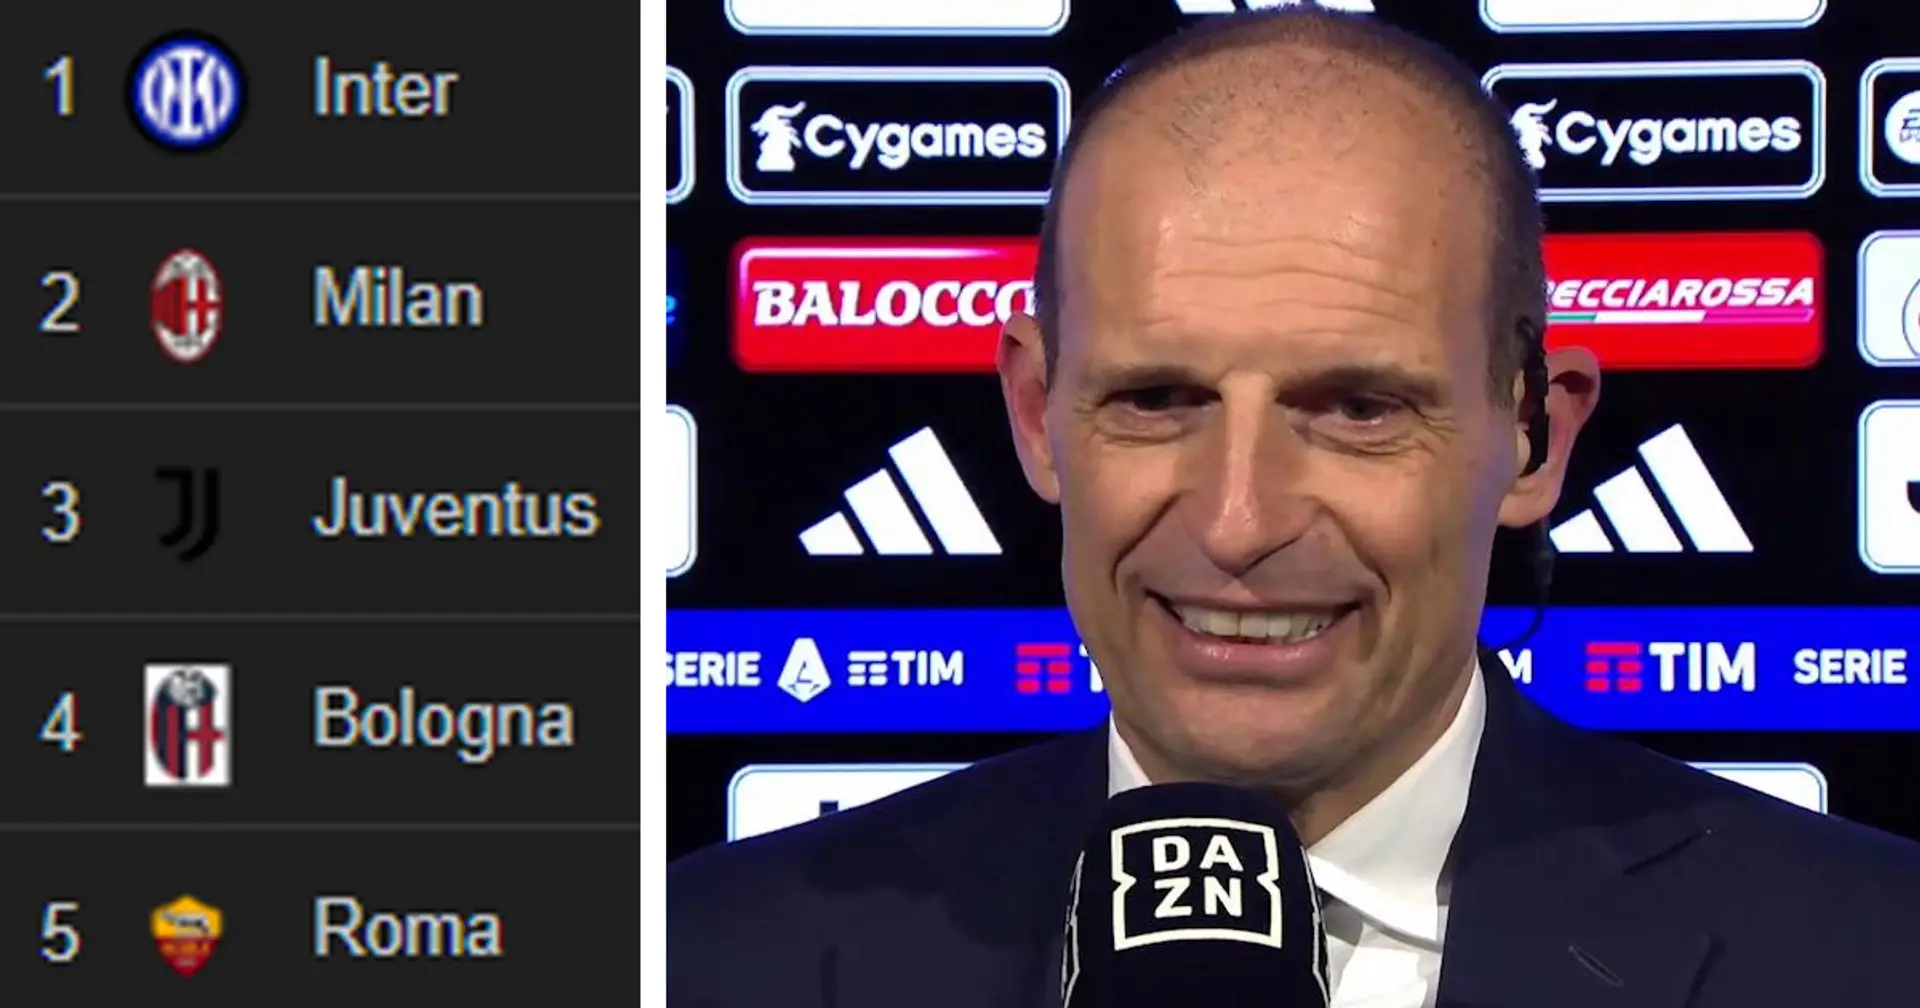 "Troppi punti nel girone d'andata": Allegri ridimensiona la Juve e il suo valore dopo l'1-0 alla Fiorentina